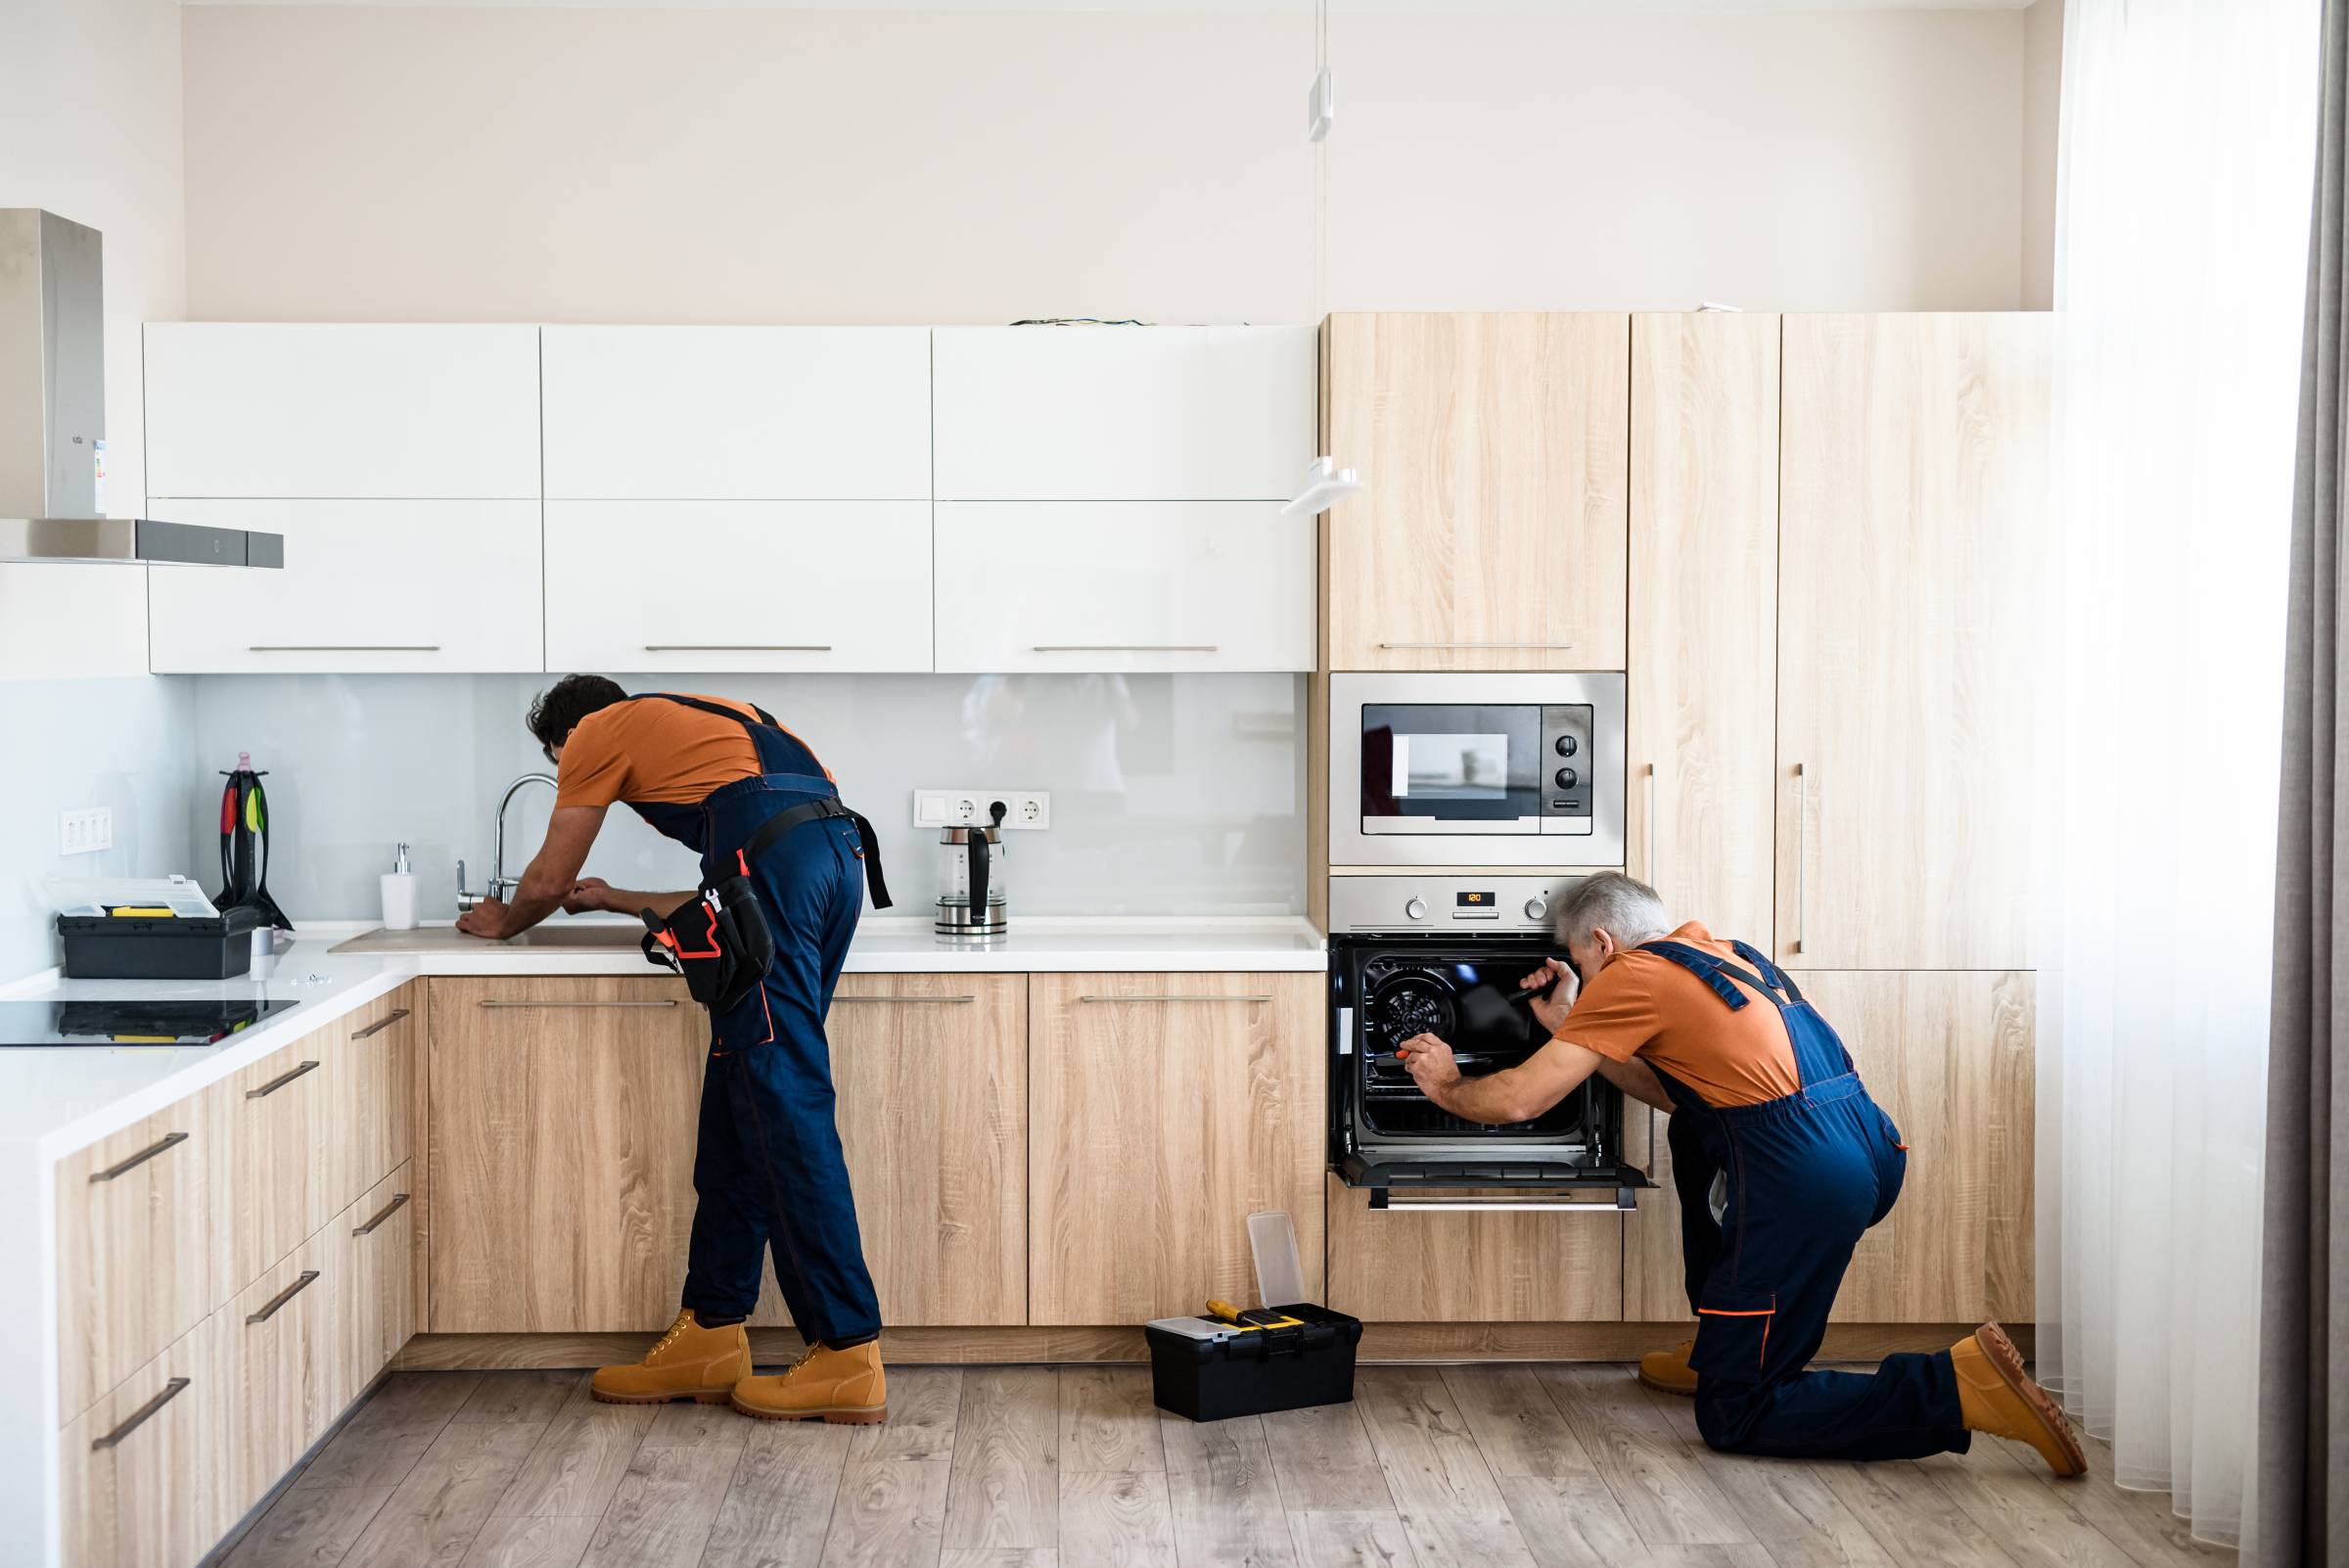 handymen installing kitchen appliances